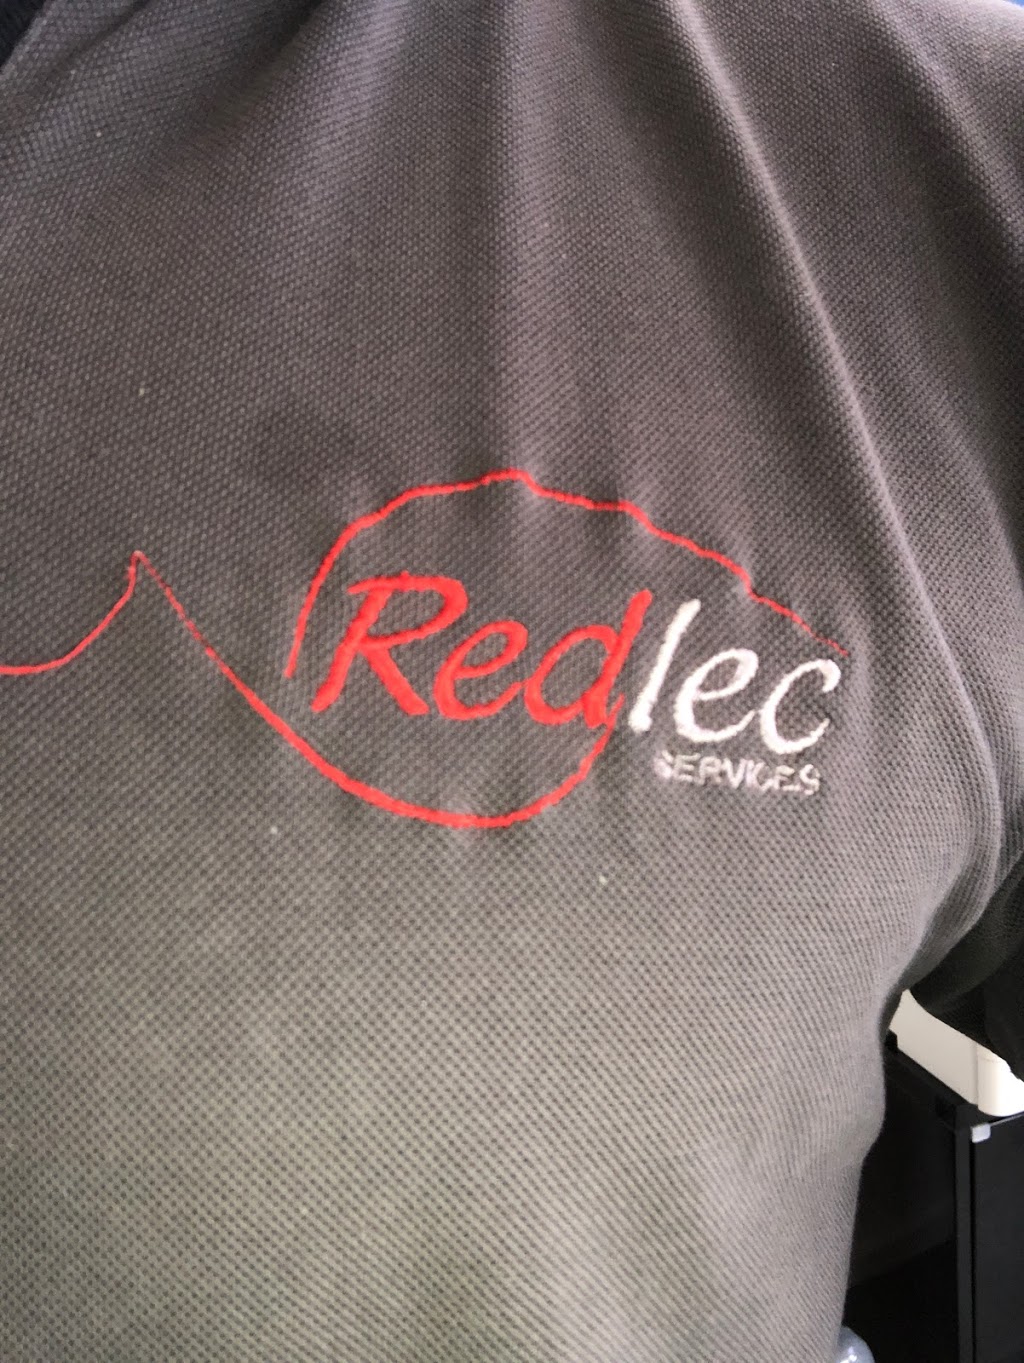 Redlec Services | electrician | 23 Frances Ave, Vermont VIC 3133, Australia | 0438220075 OR +61 438 220 075